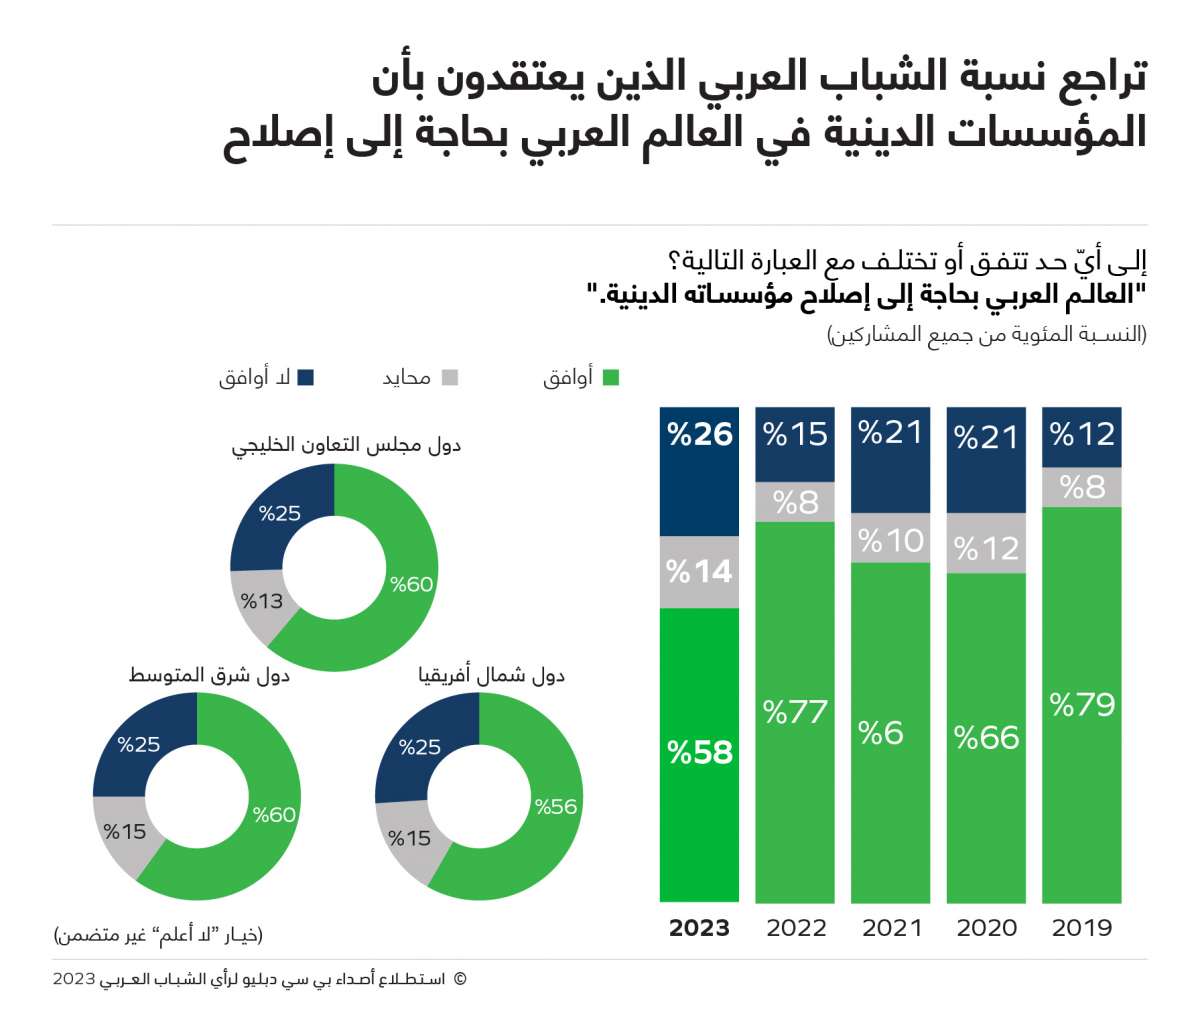 أكثر من نصف الشباب العربي في دول شرق المتوسط وشمال أفريقيا يريدون الهجرة بحثاً عن فرص العمل